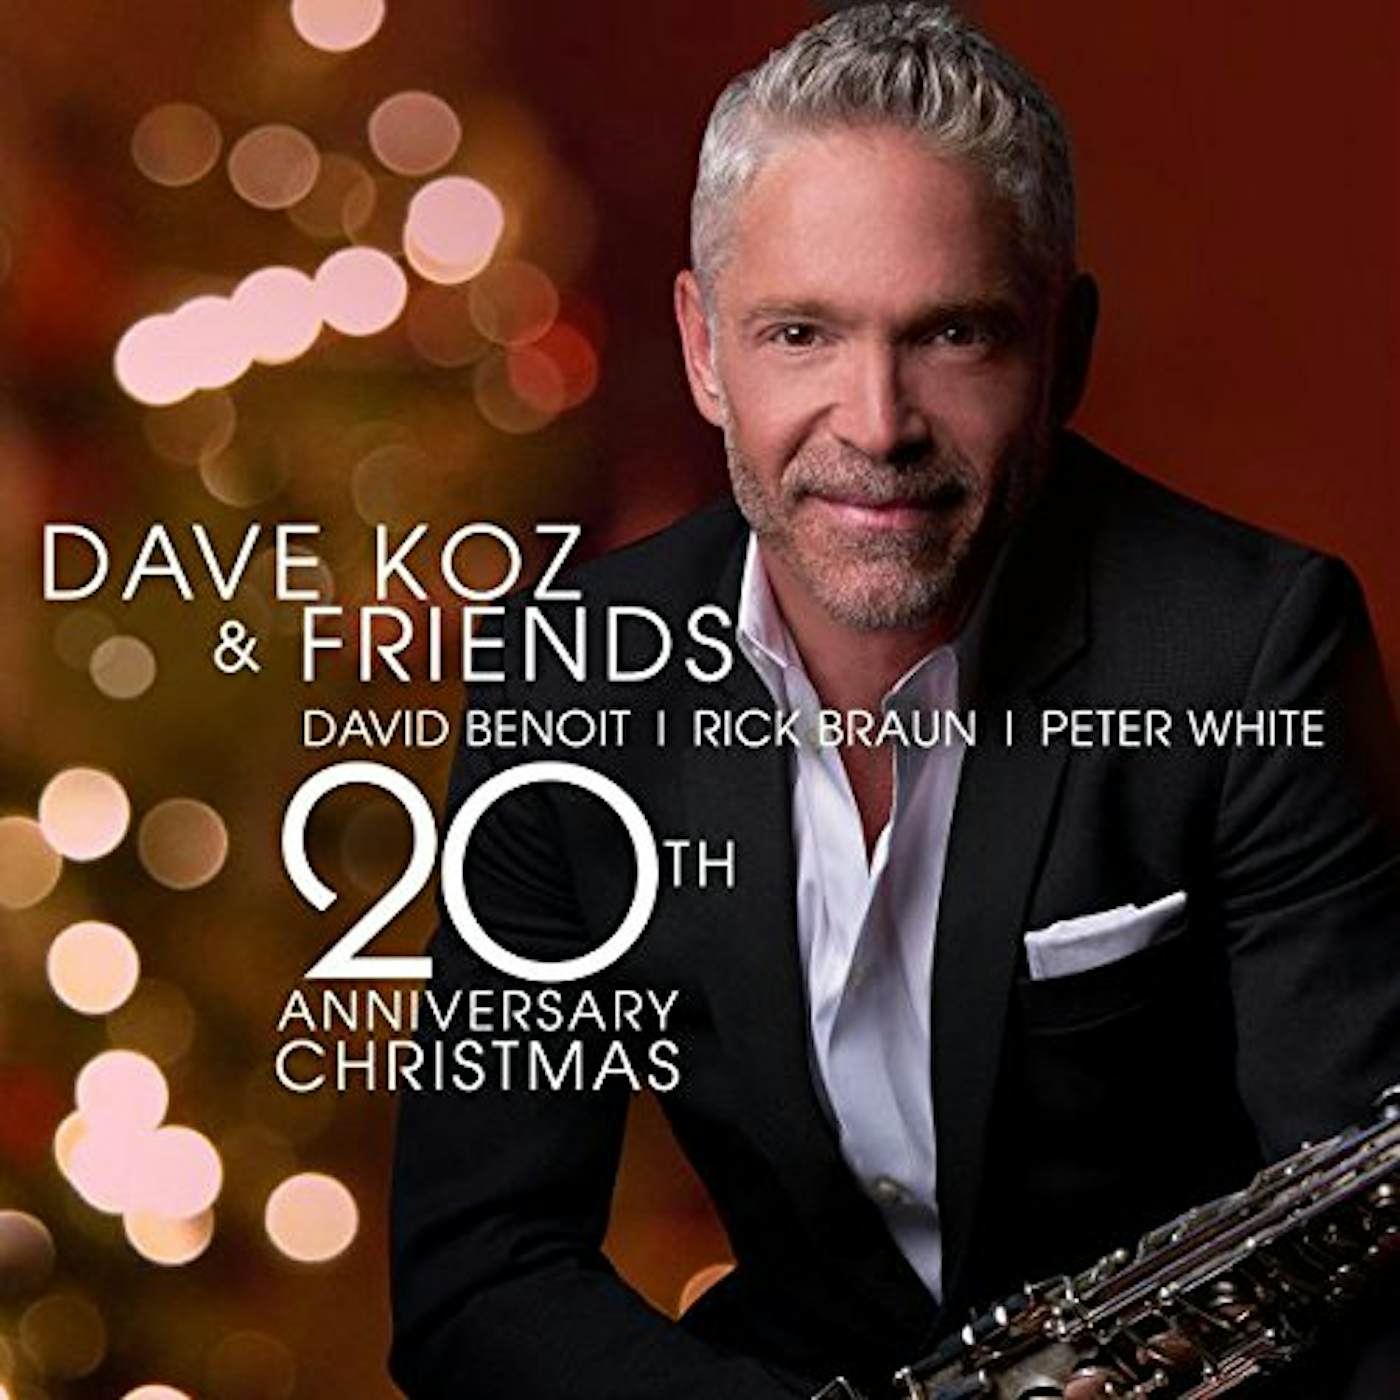 DAVE KOZ & FRIENDS 20TH ANNIVERSARY CHRISTMAS CD